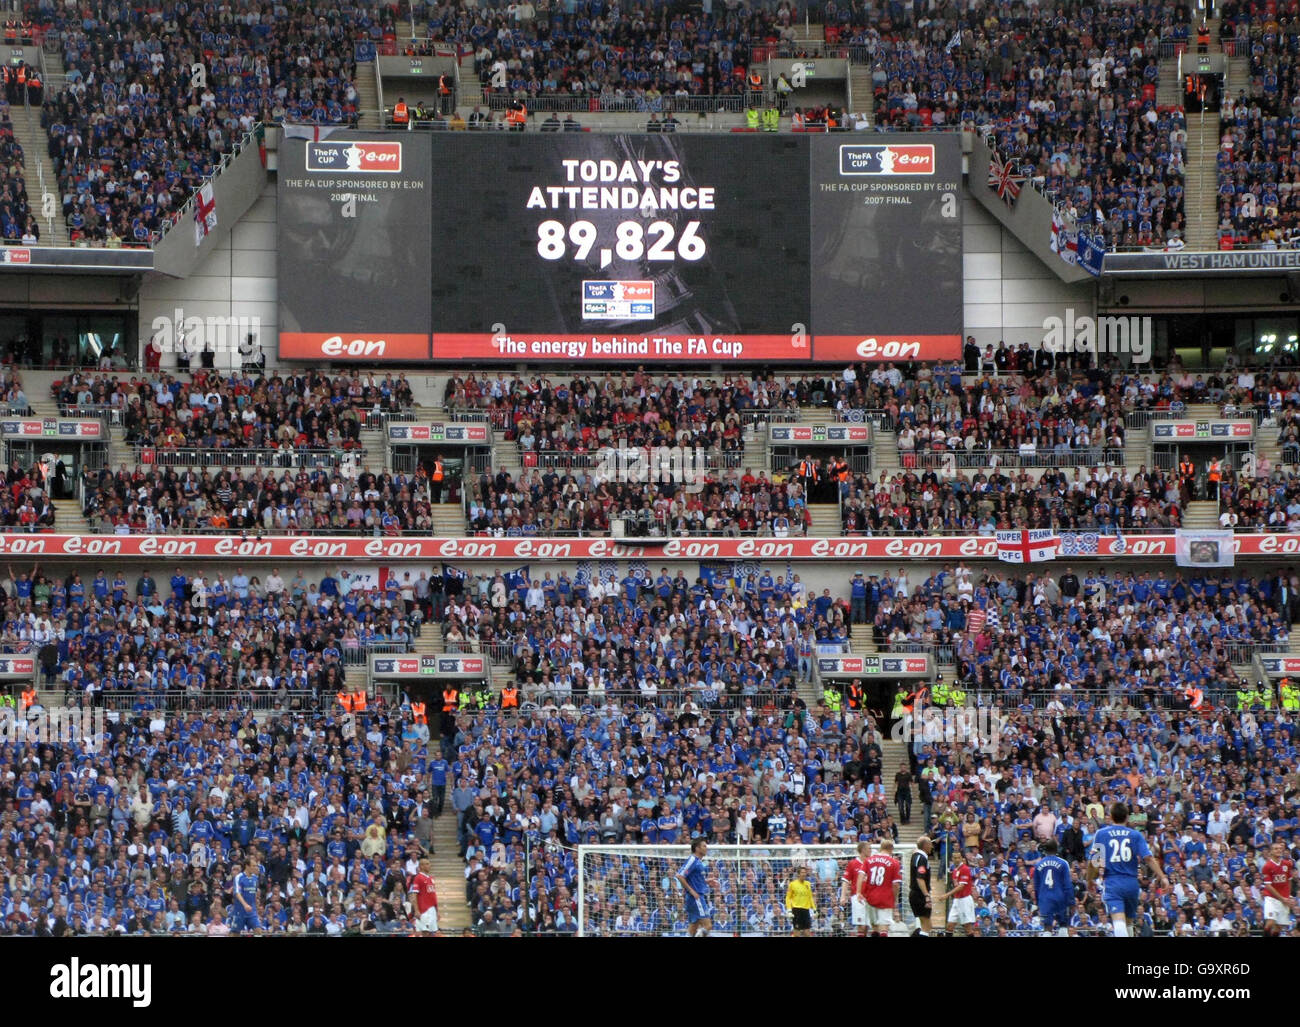 Écran géant montre la participation totale à la finale de la coupe FA entre Manchester United et Chelsea au stade Wembley, Londres. Banque D'Images